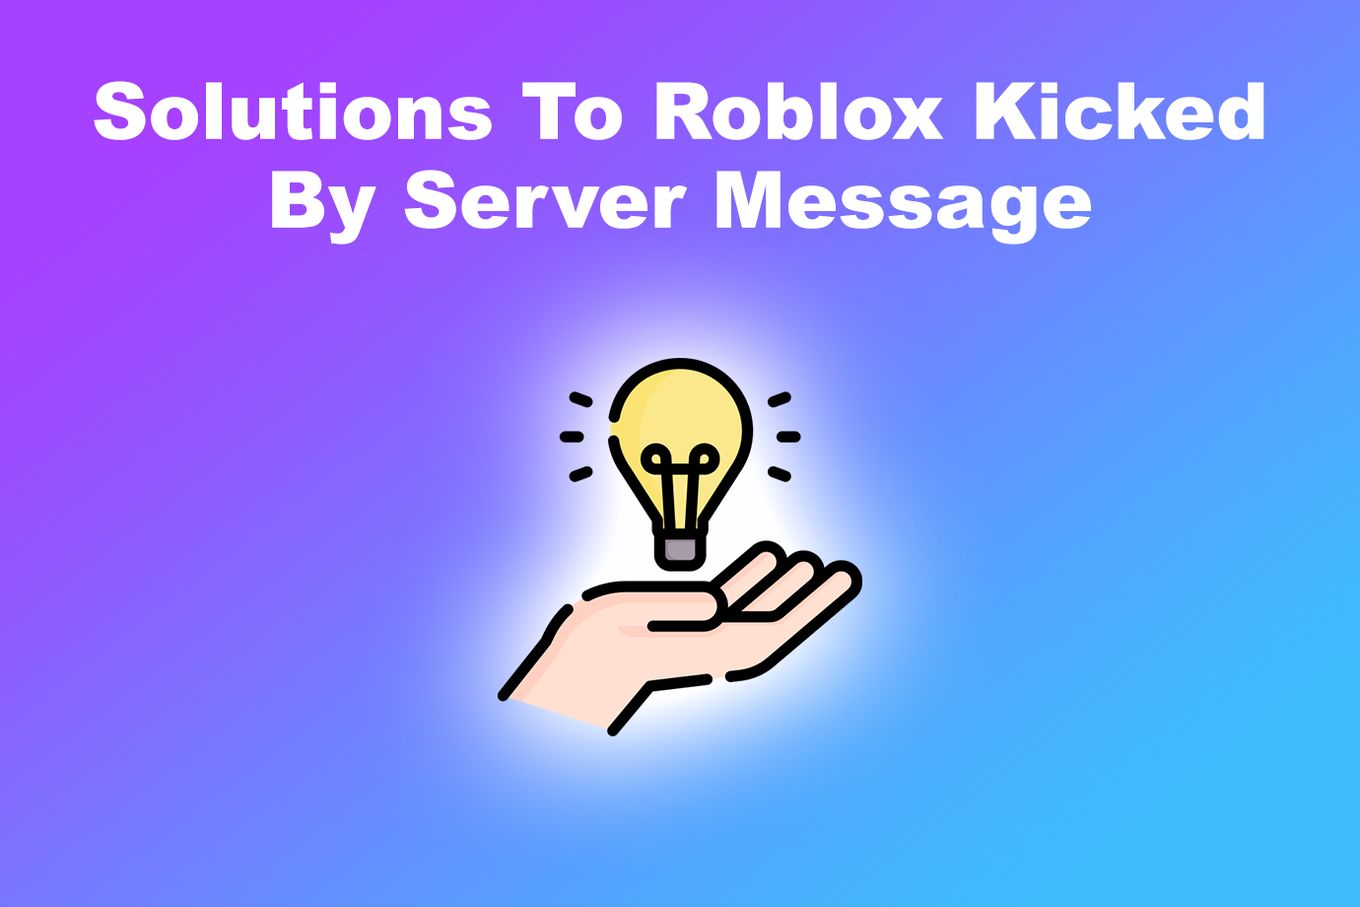 Top Servidor Roblox - Ranking dos melhores servidores Roblox em português